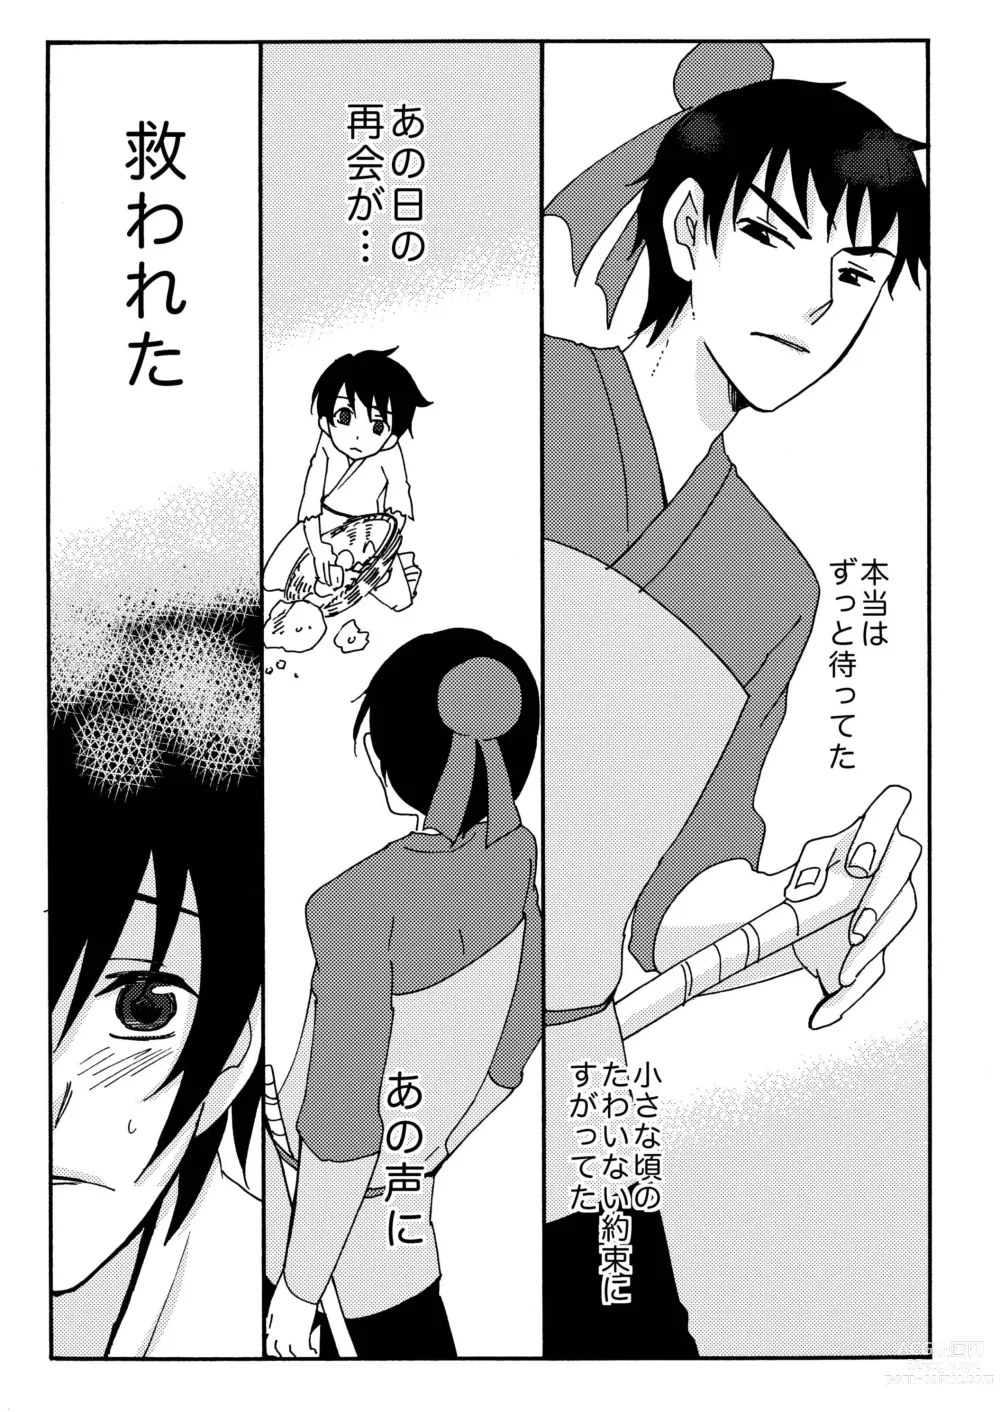 Page 74 of doujinshi Kizu